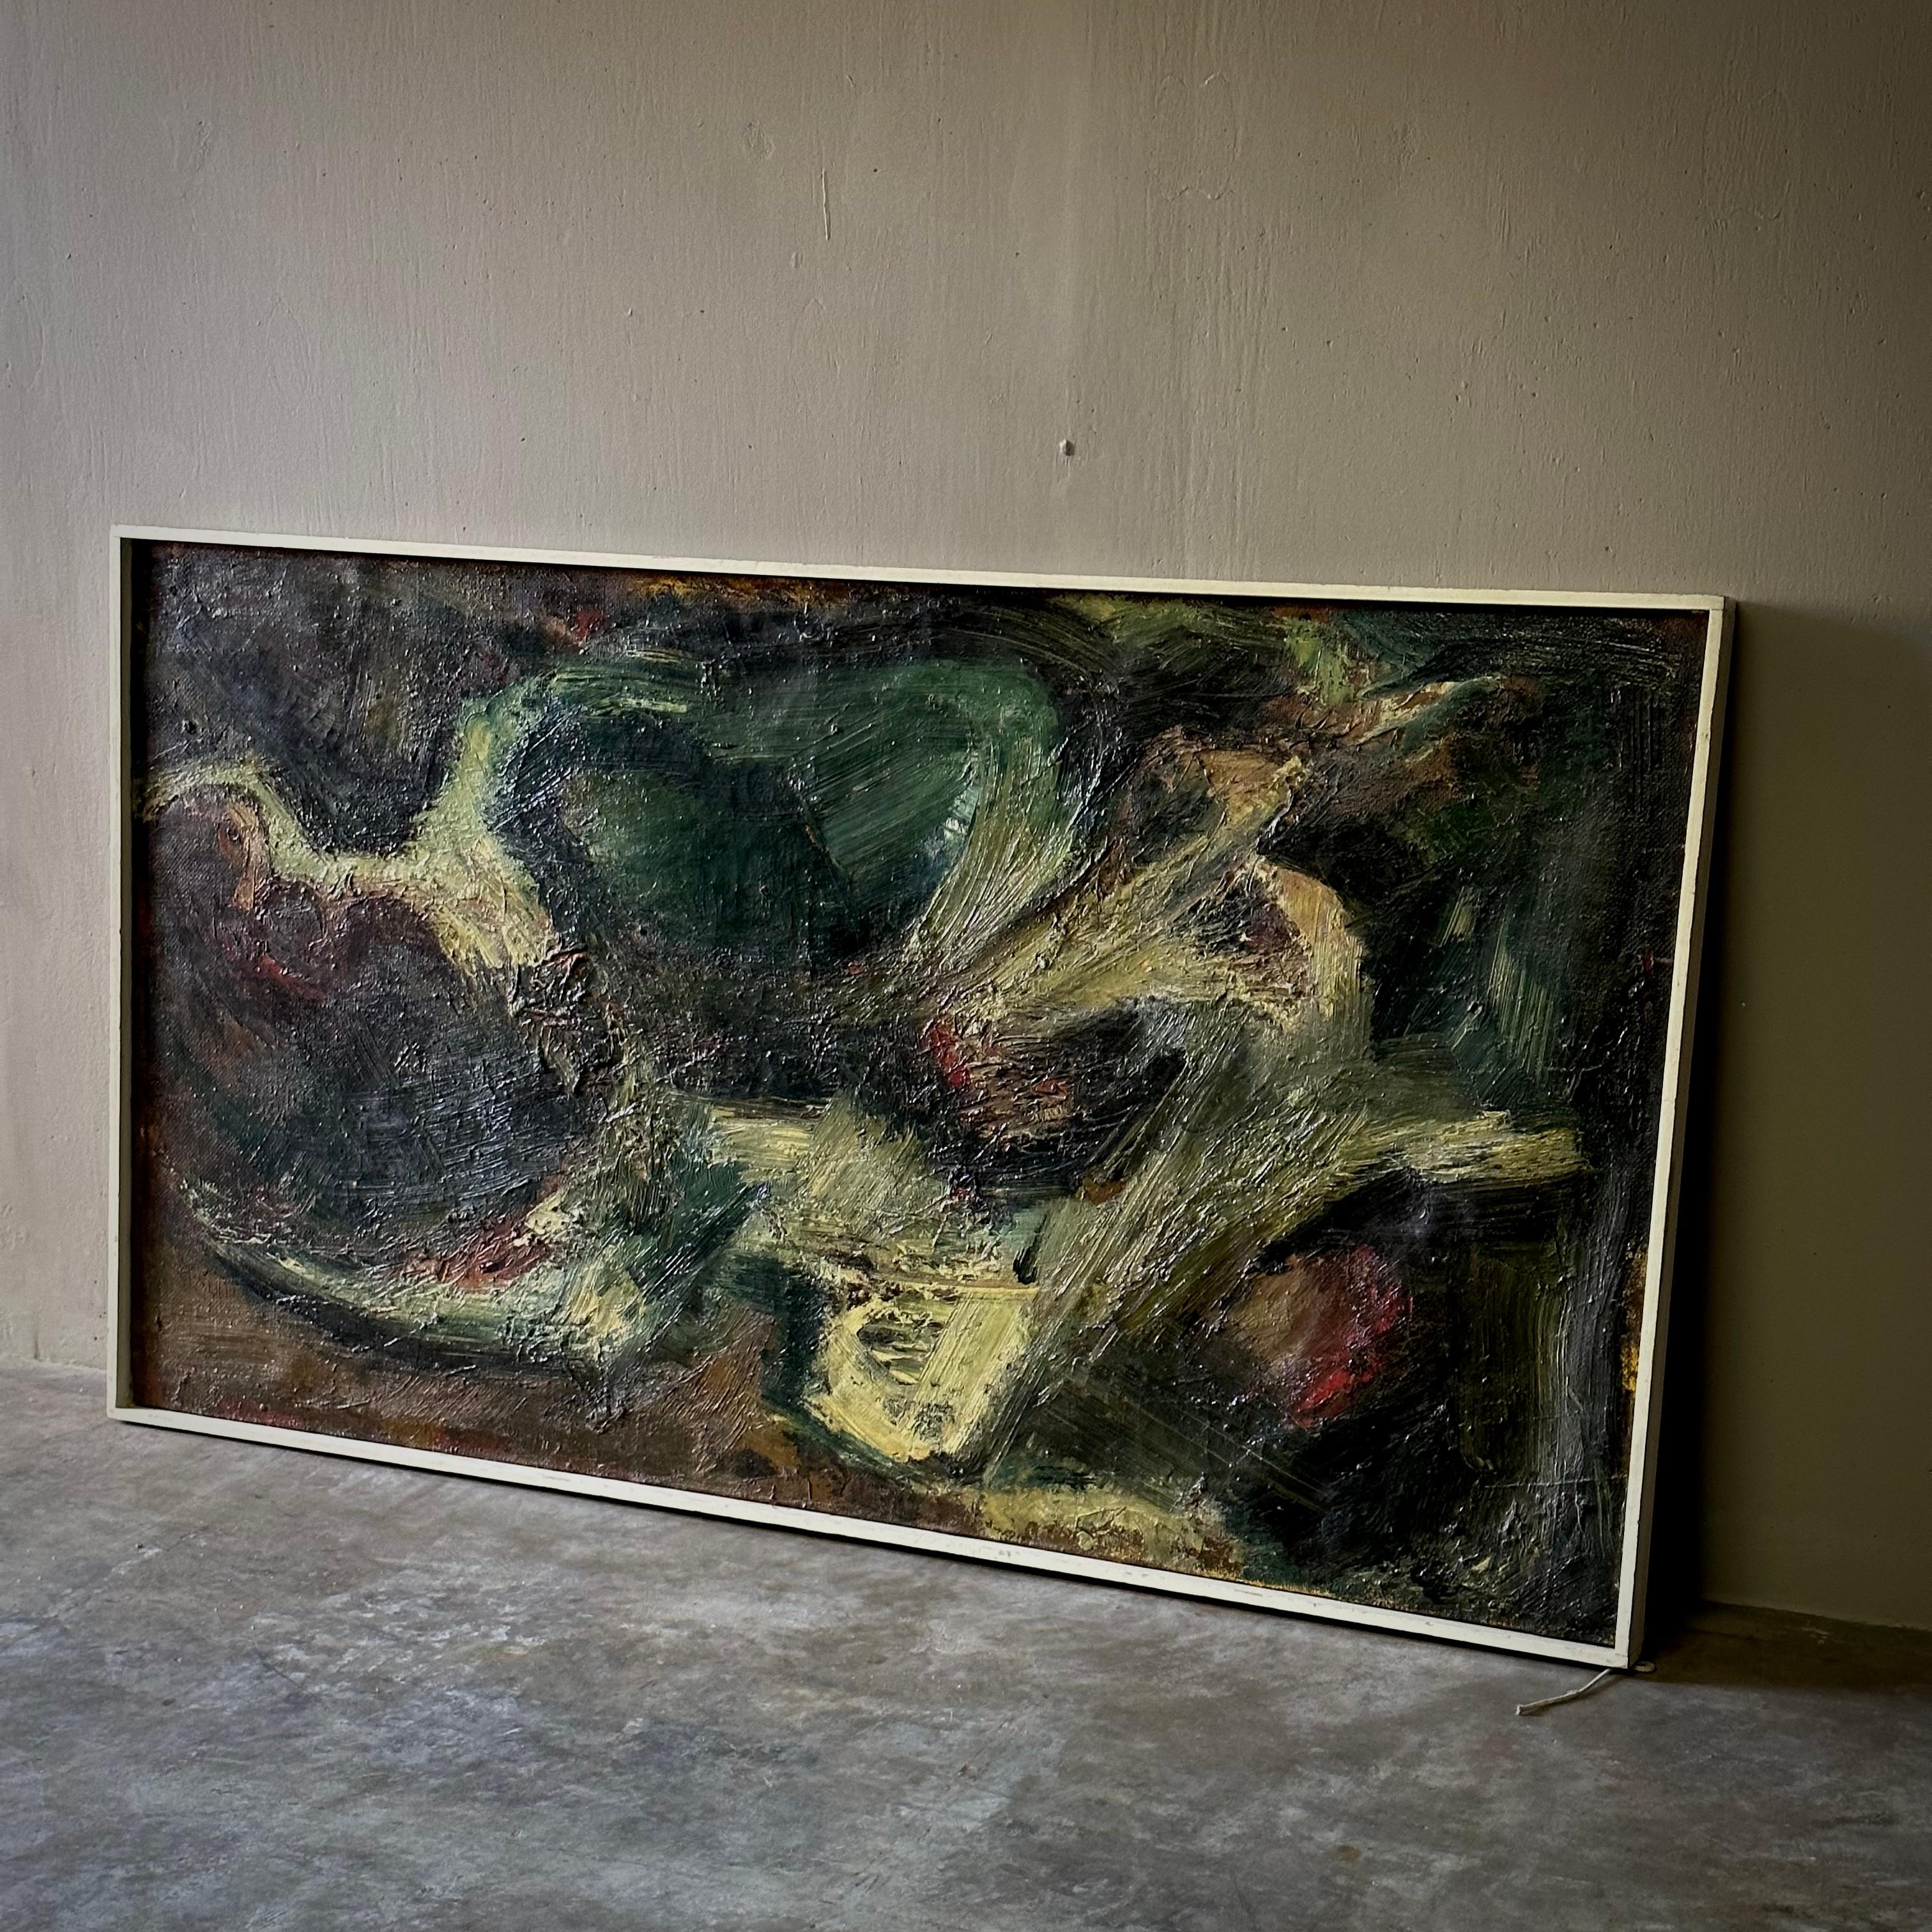 Peinture à l'huile abstraite hollandaise des années 1940 non signée. Tempétueux et énergique, avec une qualité picturale apparentée à Chagall et Der Blaue Reiter. Un merveilleux exemple de l'expressionnisme abstrait hollandais précoce avec une riche